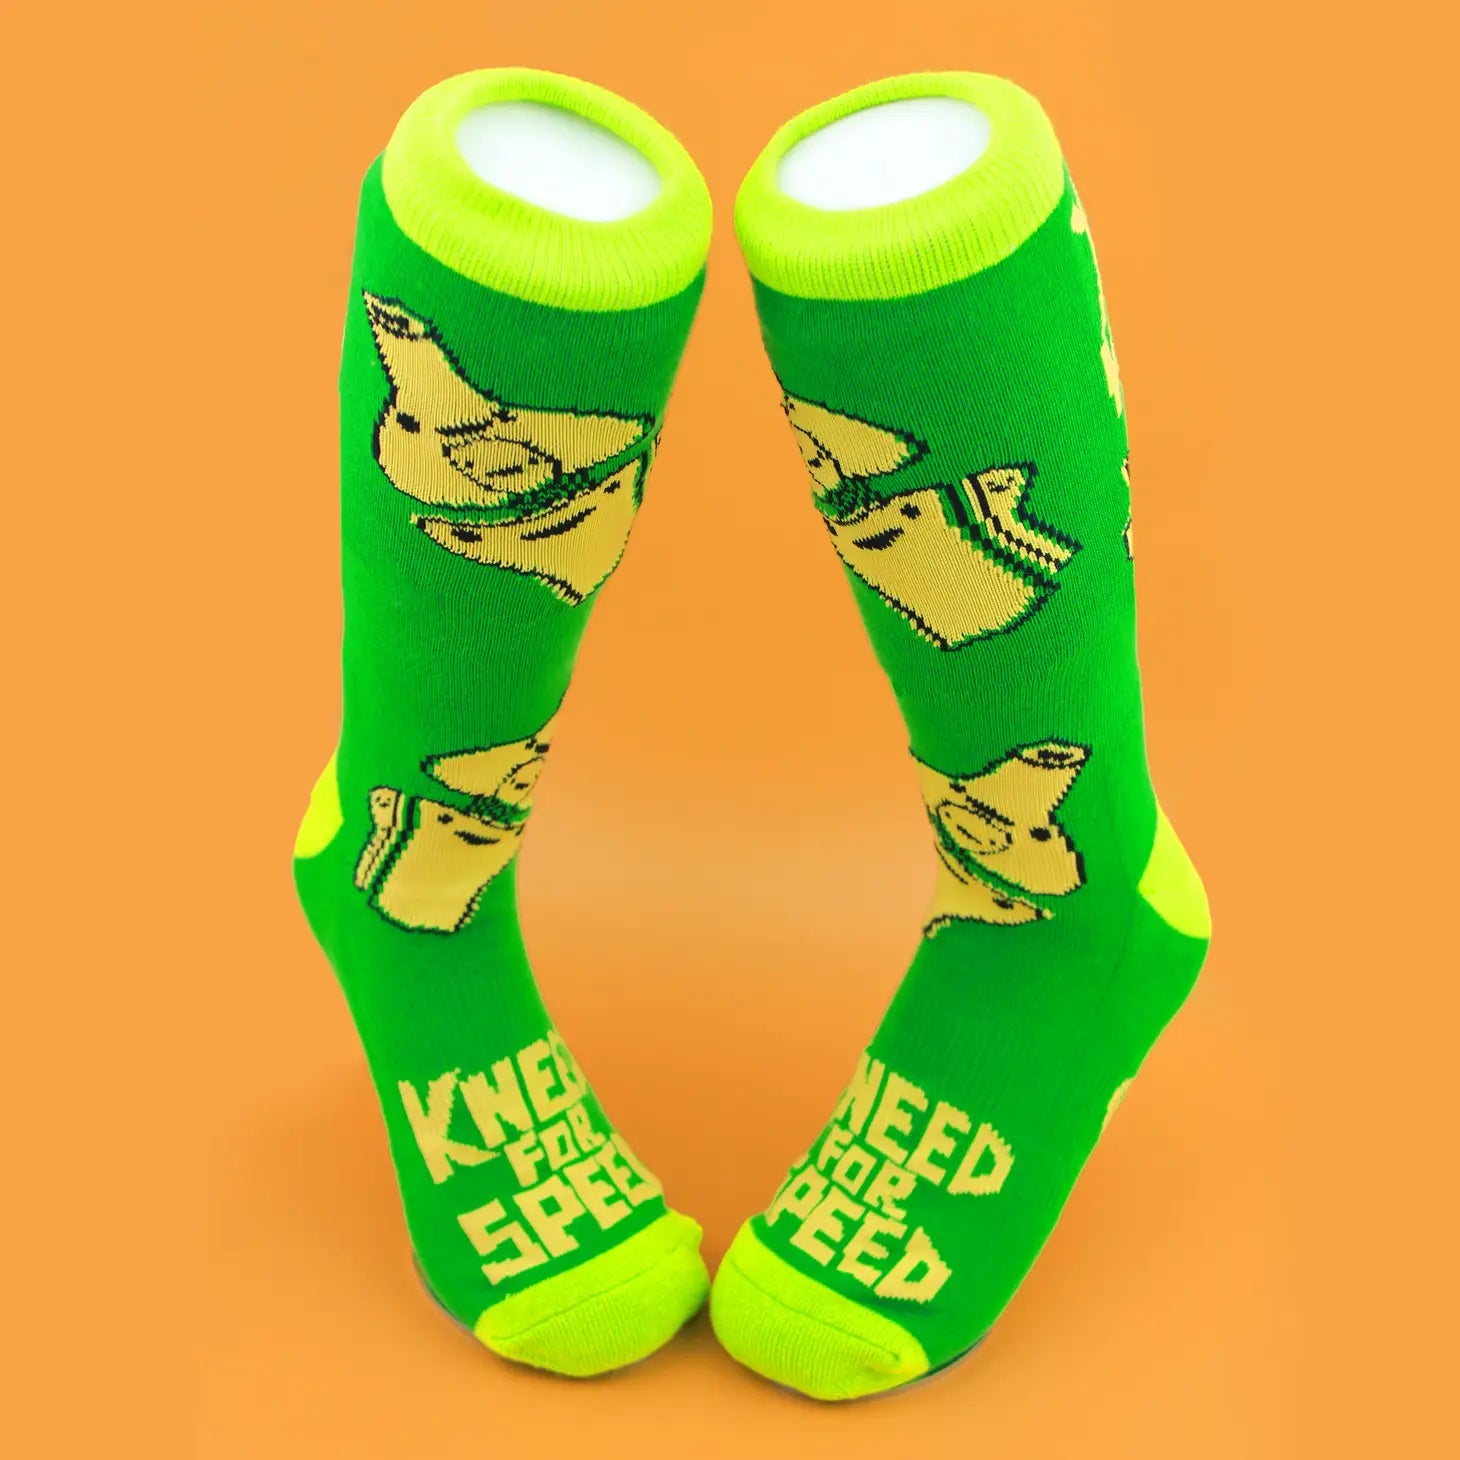 socks knee - Kneed For Speed